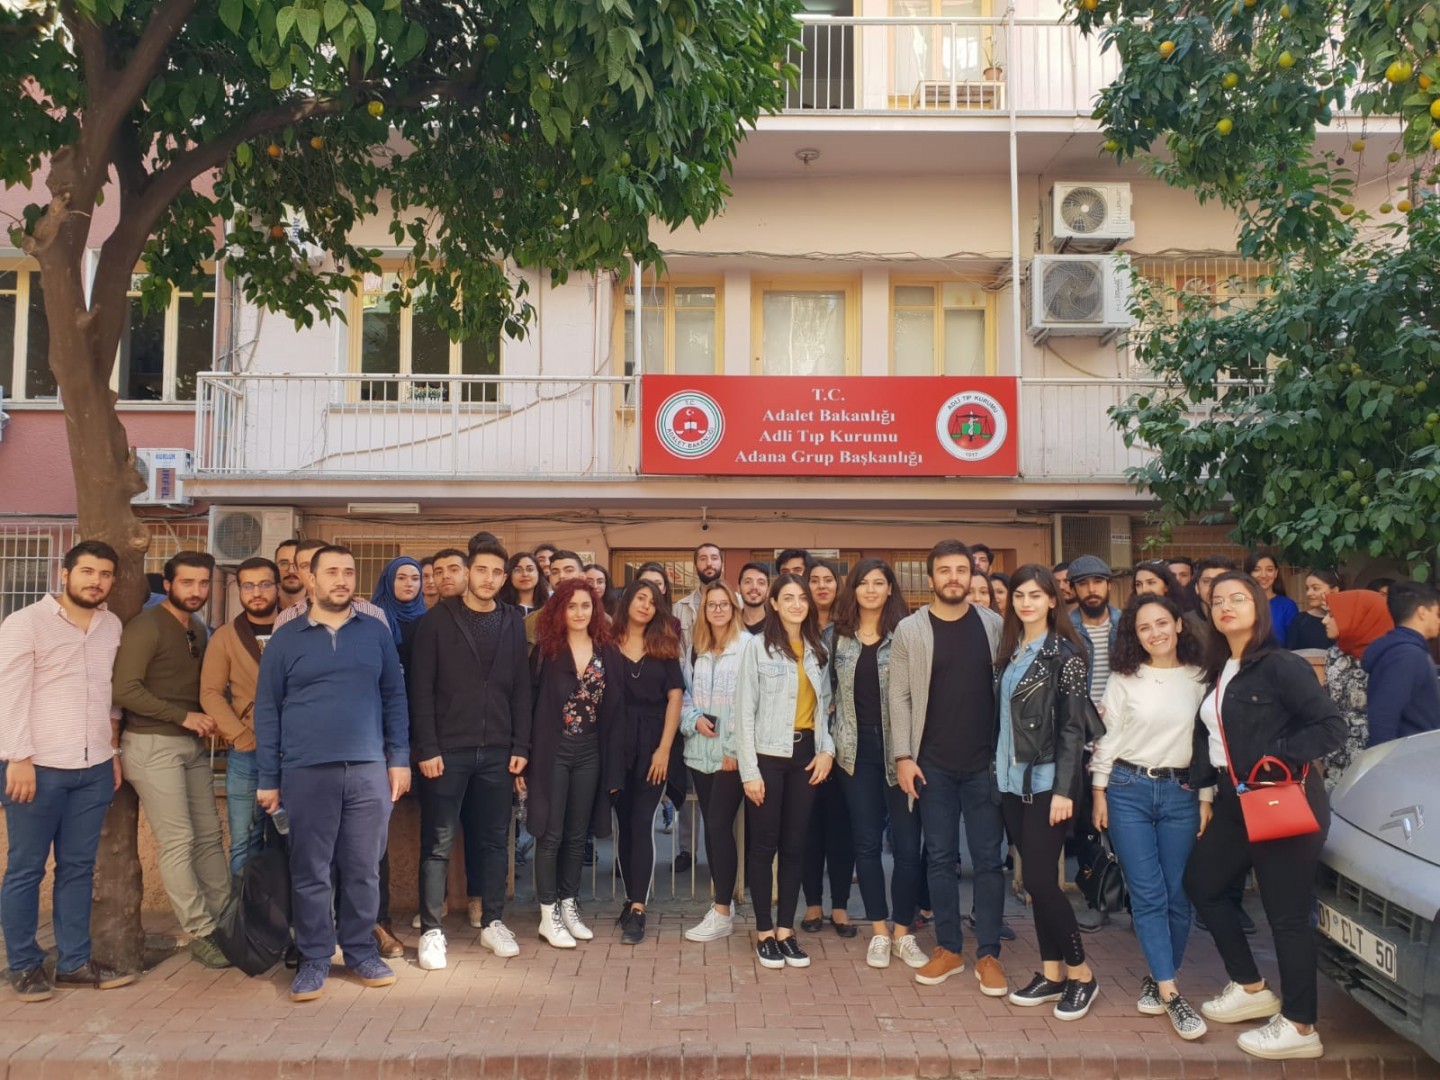 4. Sınıf Öğrencilerimiz T.C. Adli Tıp Kurumu Adana Grup Başkanlığını ziyaret ettiler.